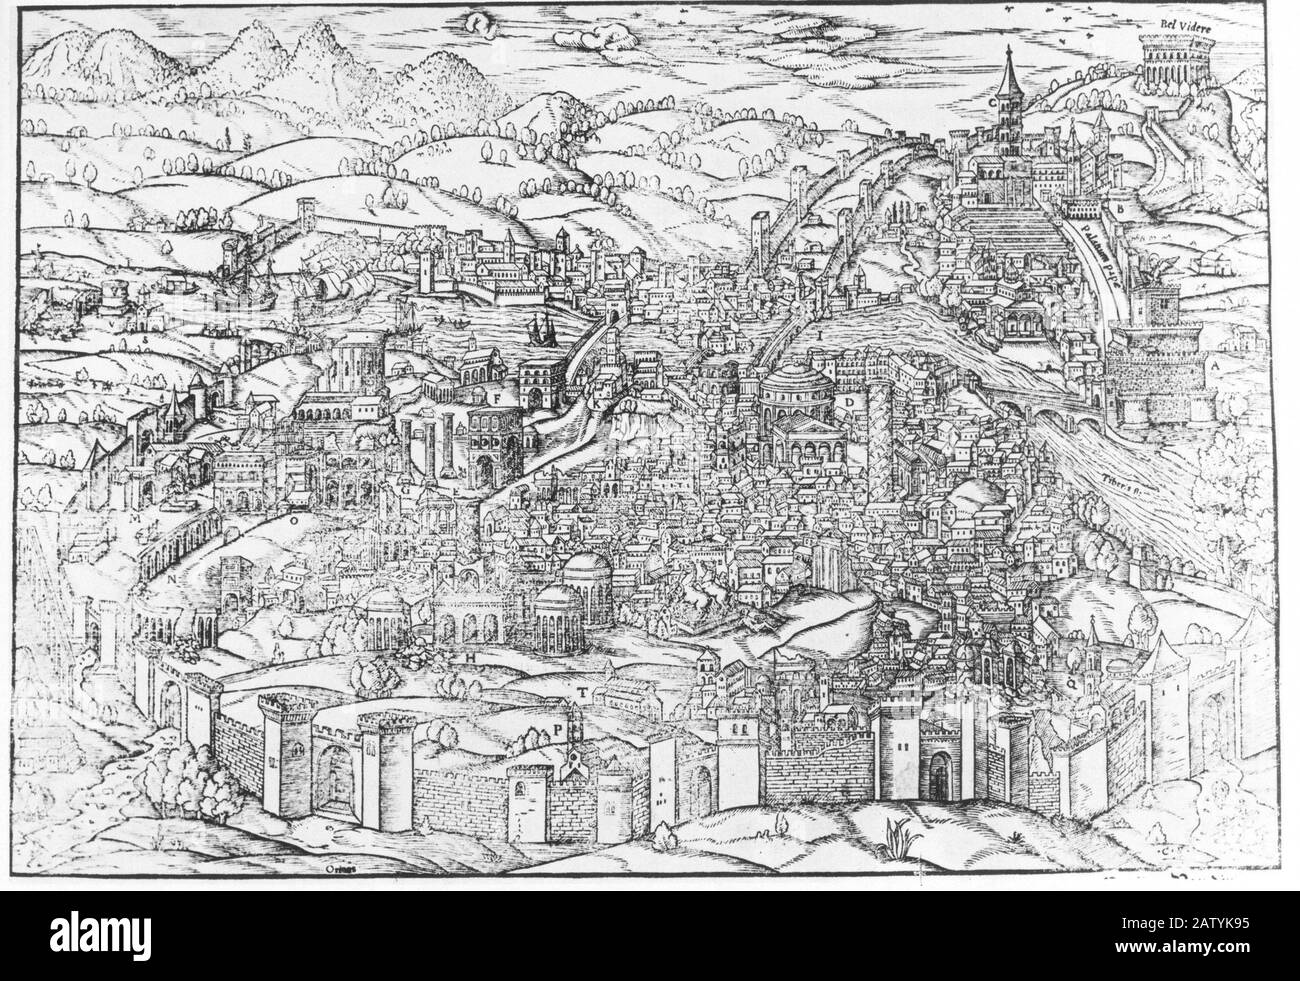 1500 c : ROME ( Italie ) , gravure ancienne de la ville autour de 1500's - ROMA - VATICANO - CITÉ DU VATICAN - paesaggio - paysage - URBANISTICA - plan de la ville Banque D'Images